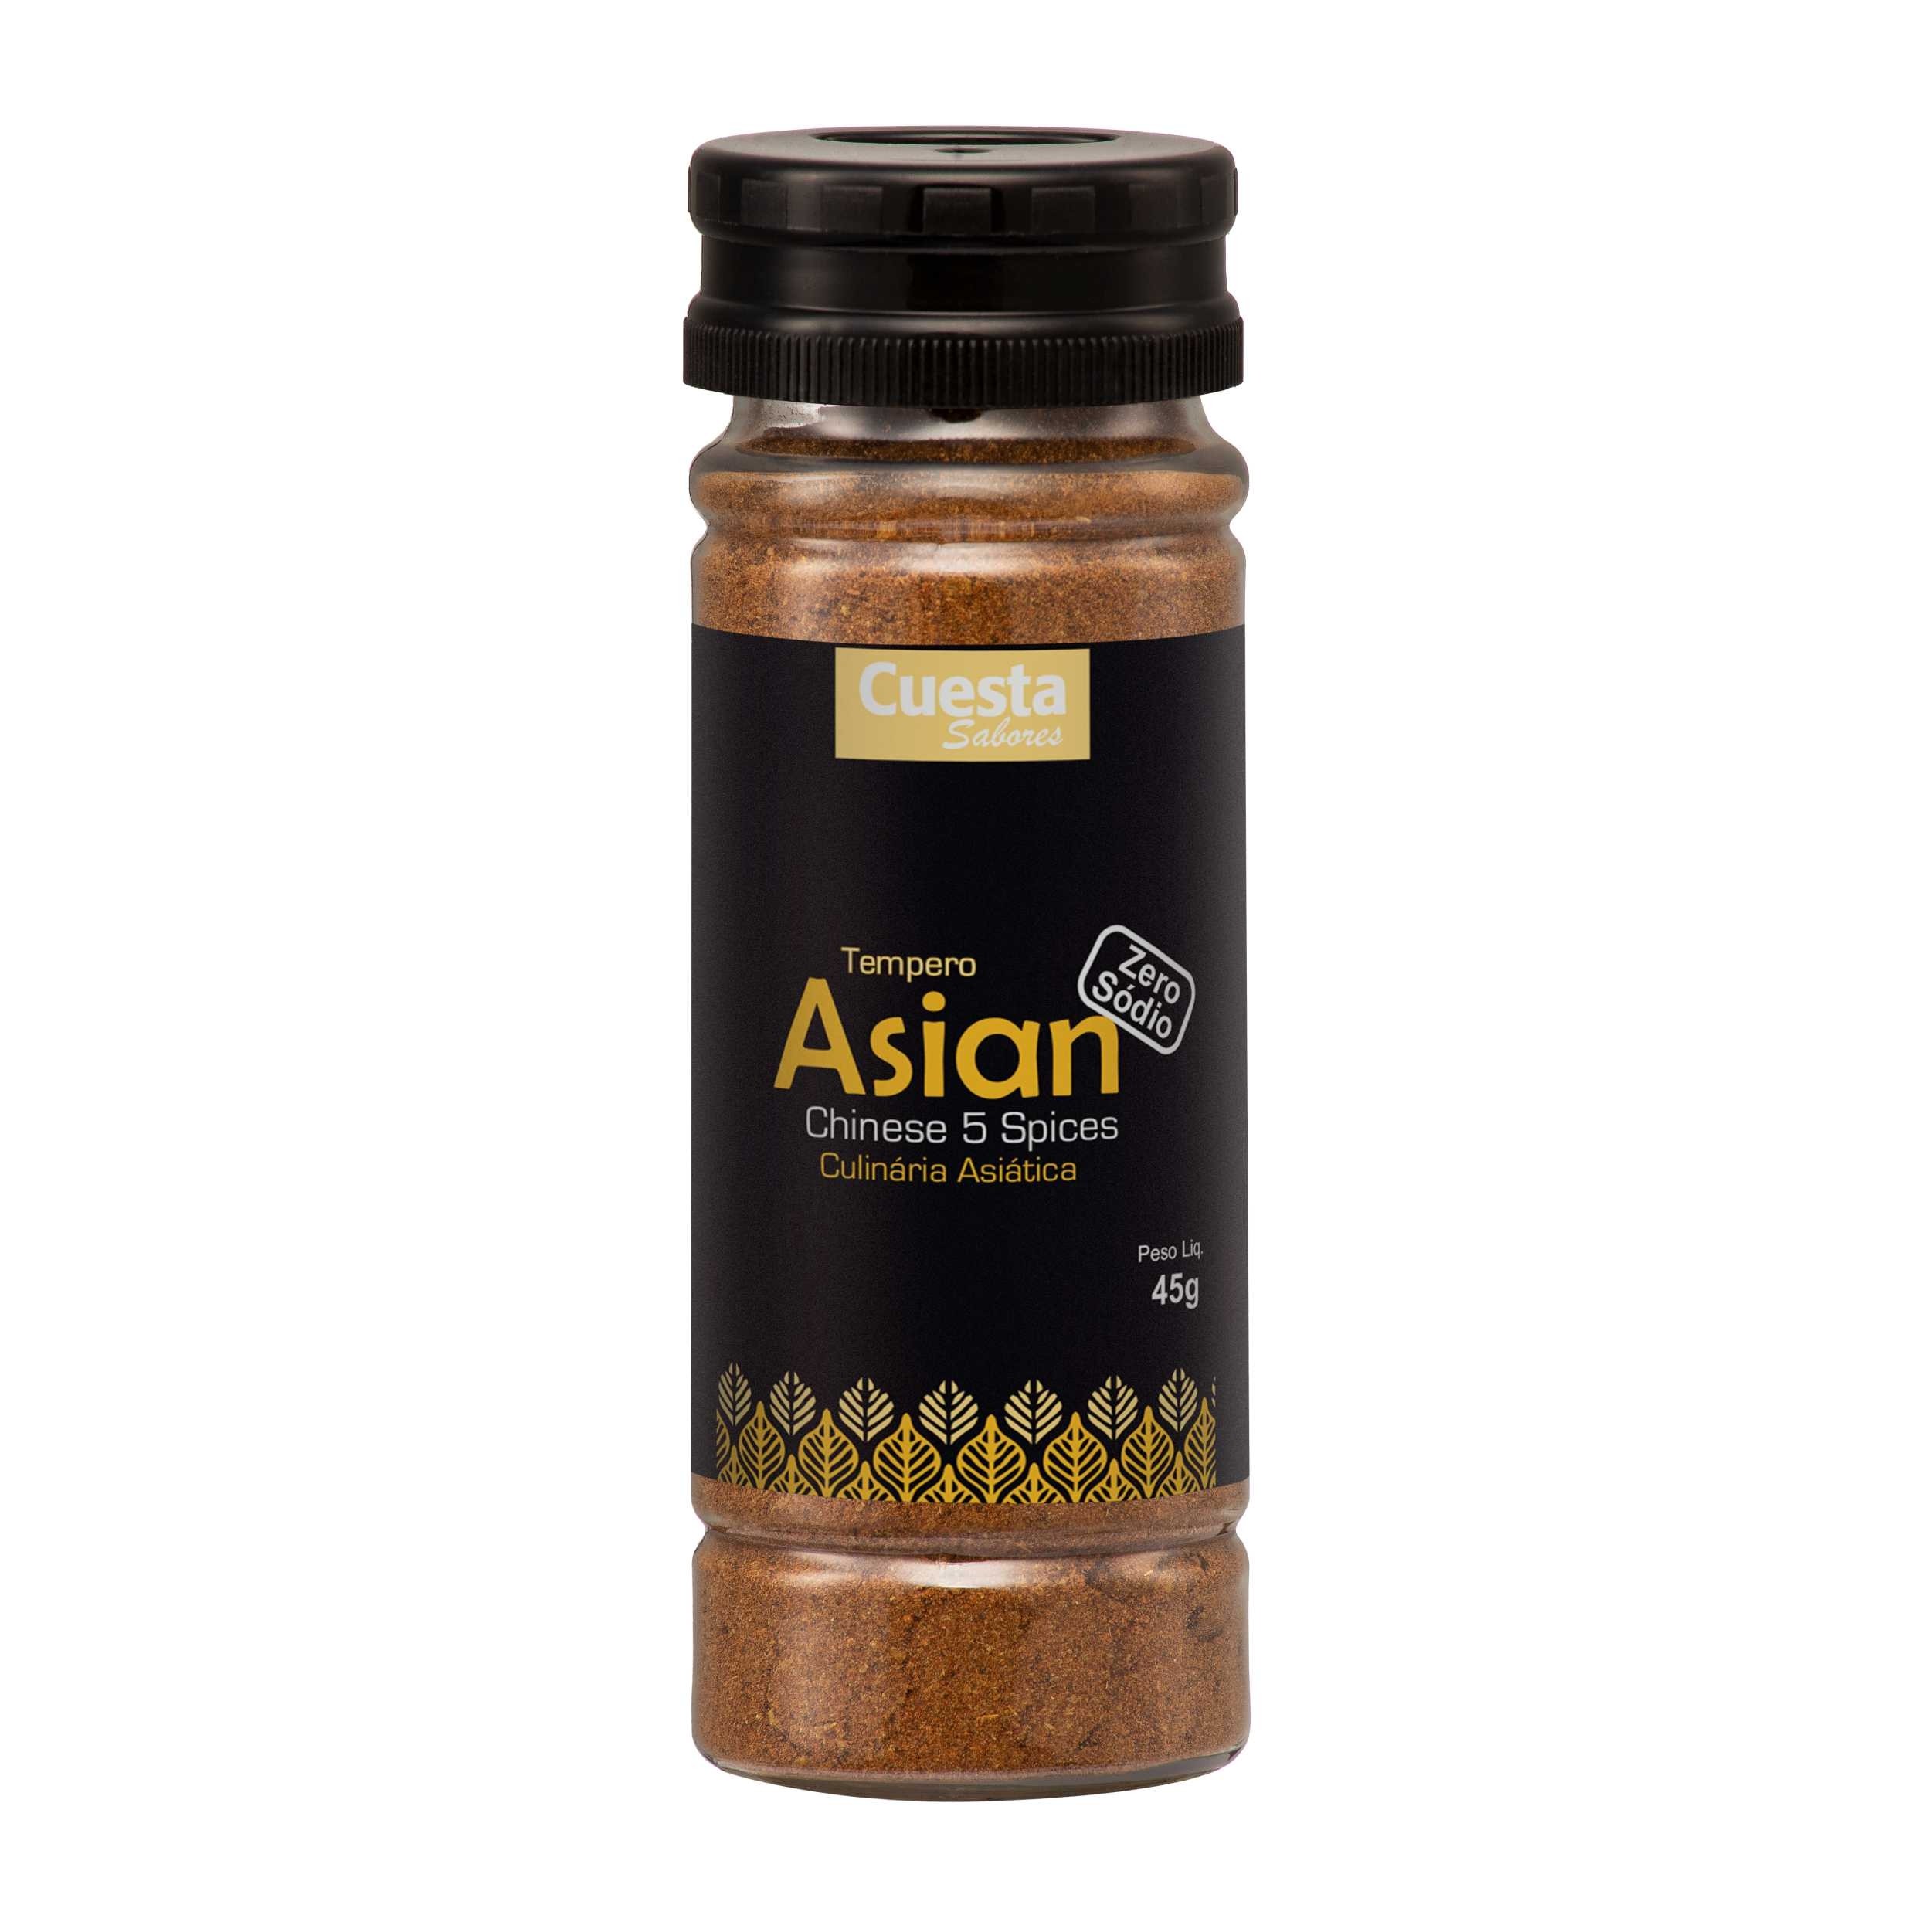 Tempero Asian - Cuesta Gourmet